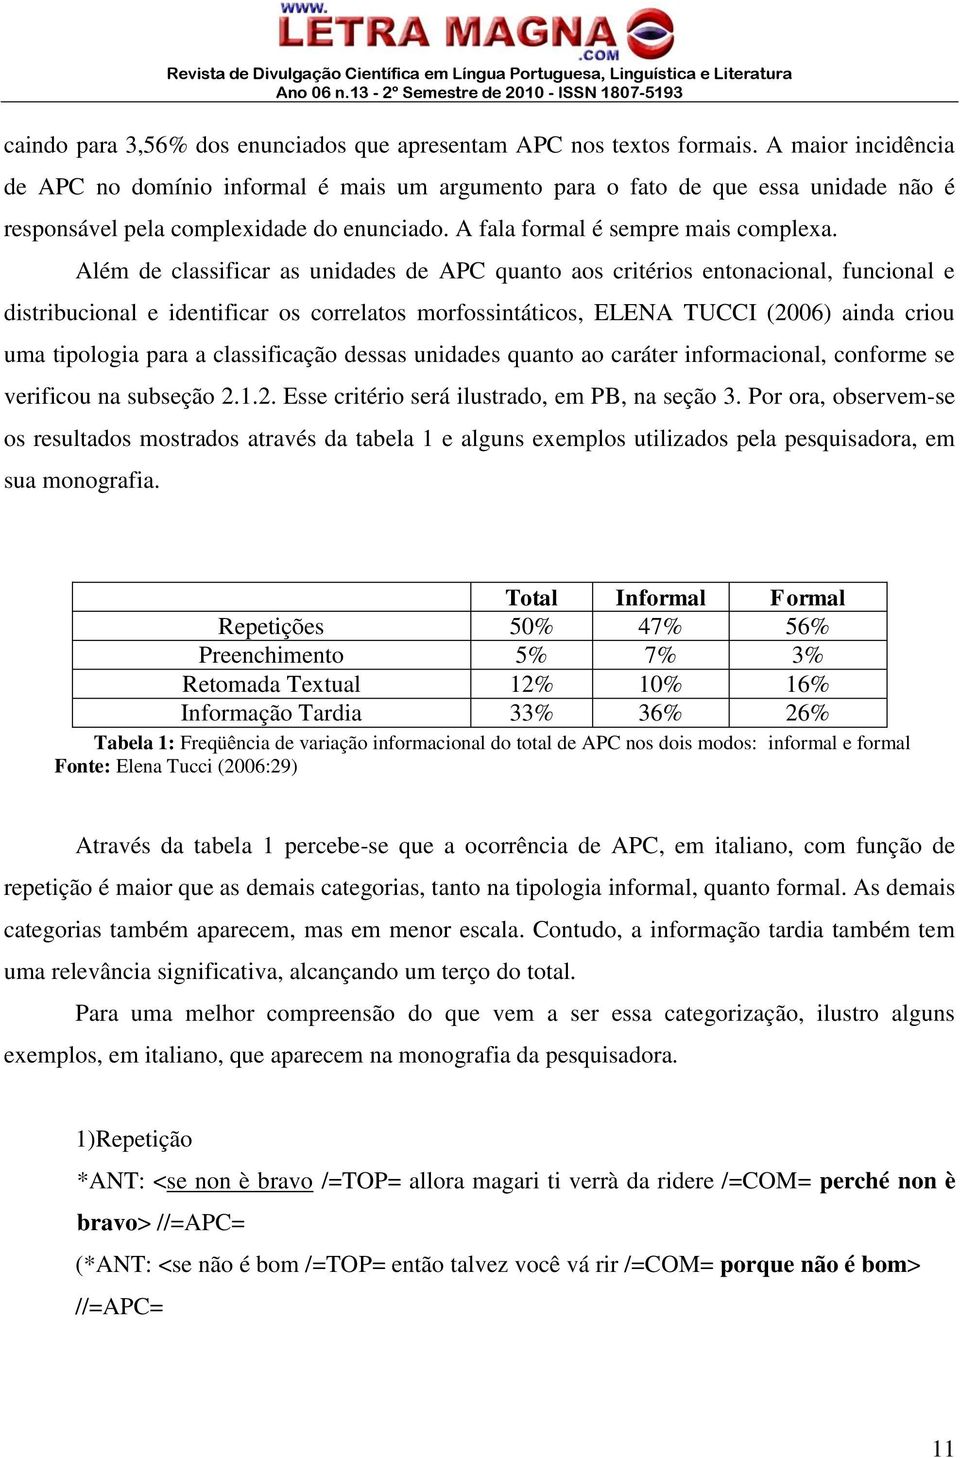 Além de classificar as unidades de APC quanto aos critérios entonacional, funcional e distribucional e identificar os correlatos morfossintáticos, ELENA TUCCI (2006) ainda criou uma tipologia para a